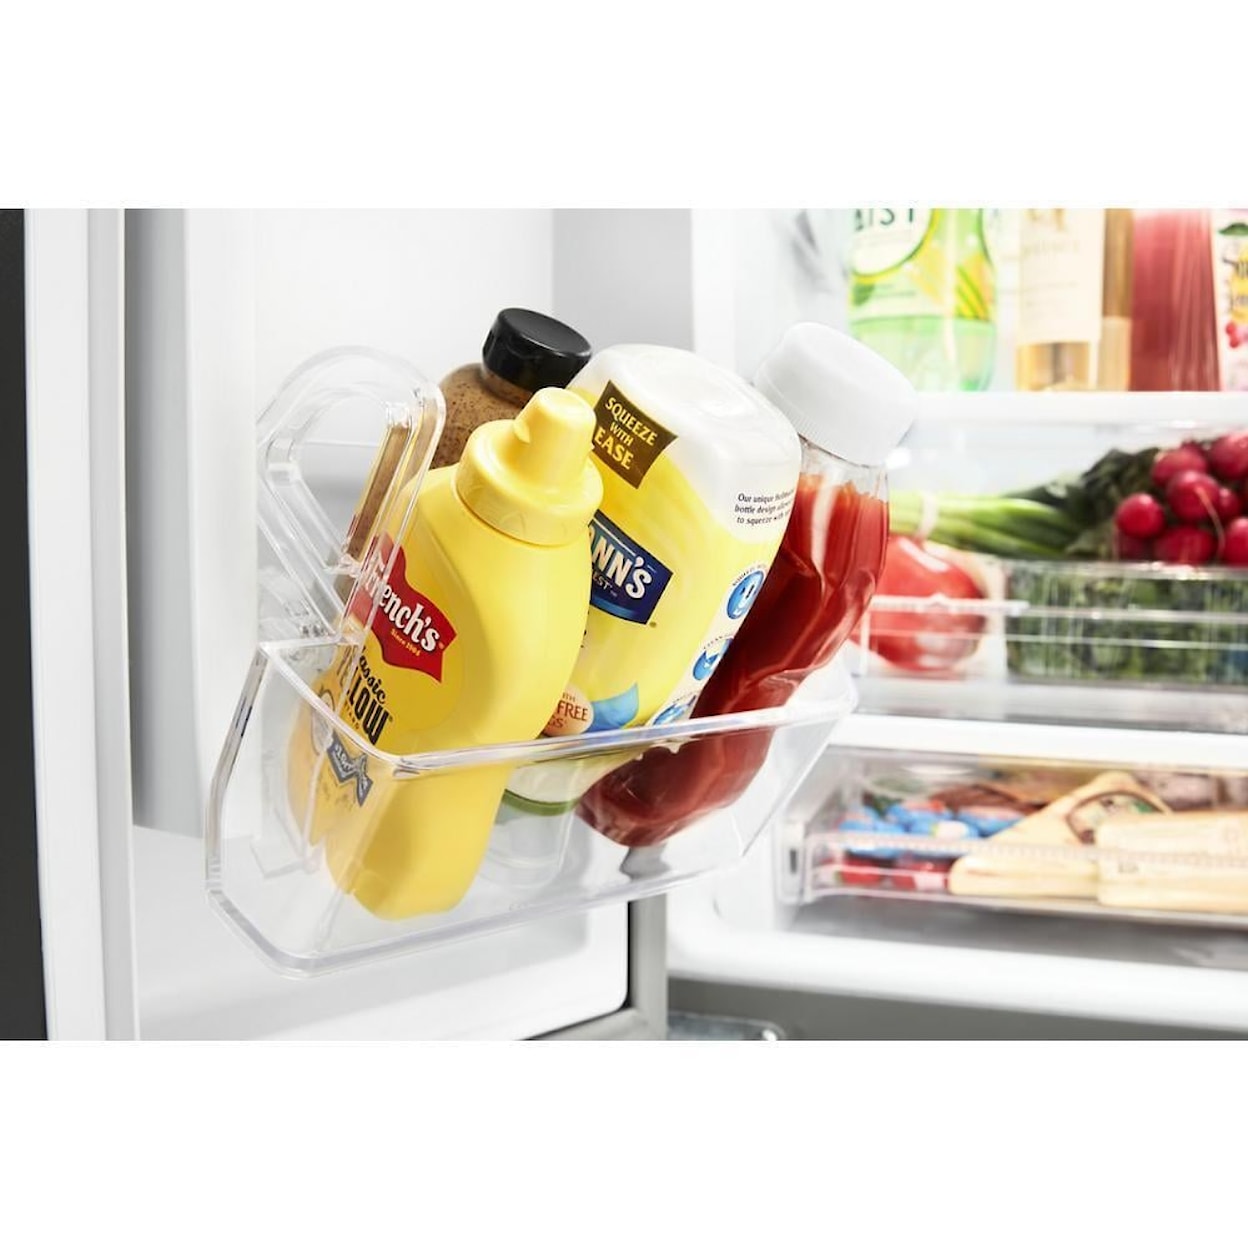 Whirlpool Refrigerators Refrigerator